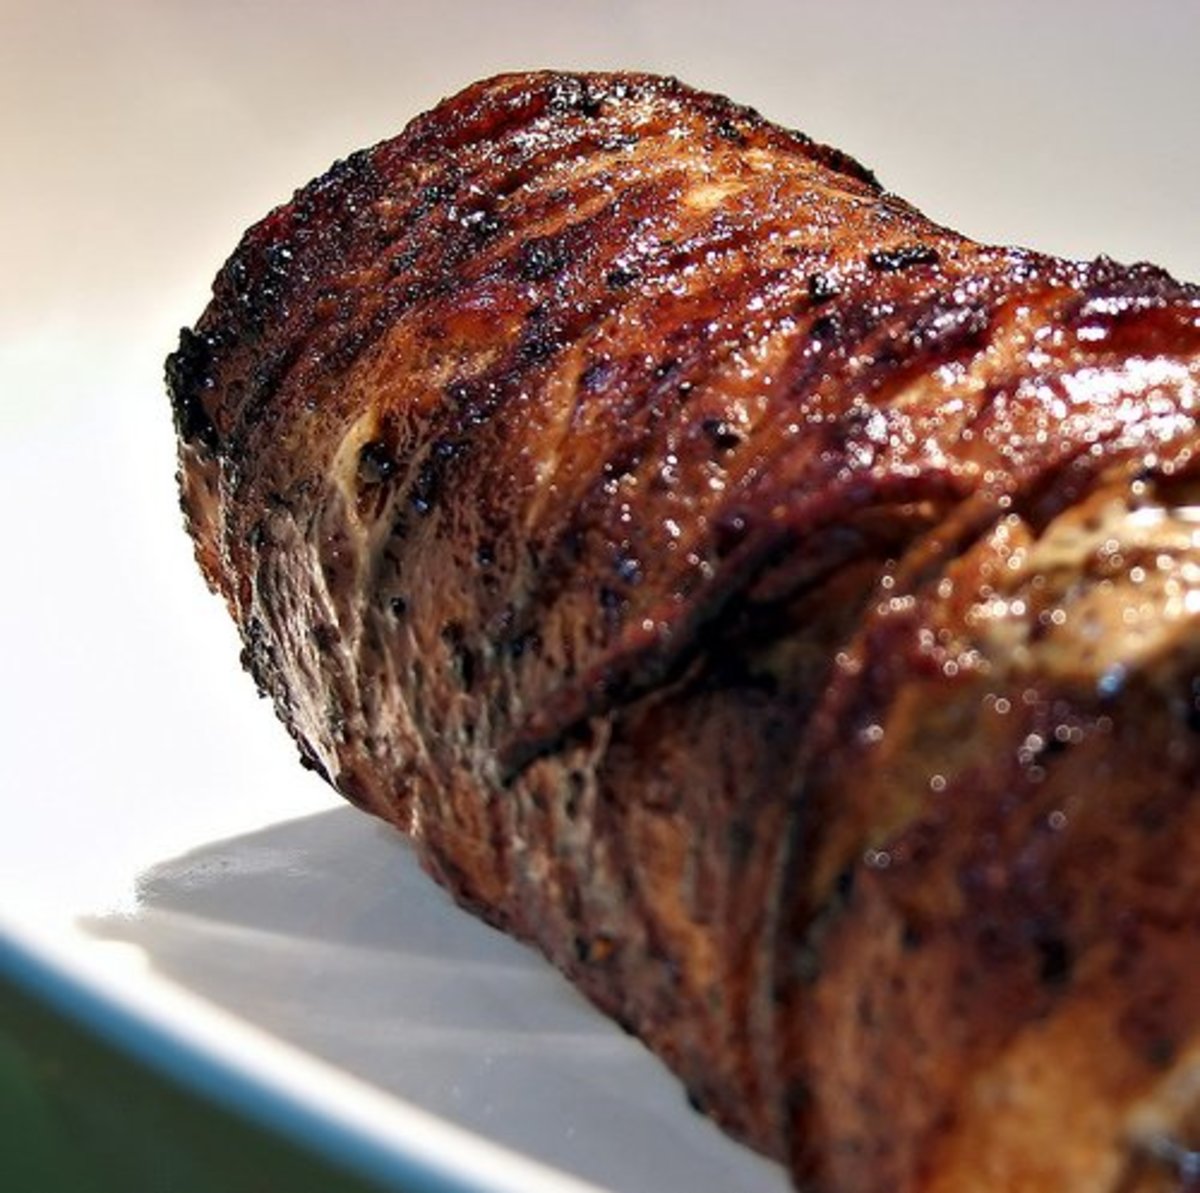 How do you cook pork tenderloin in the oven?